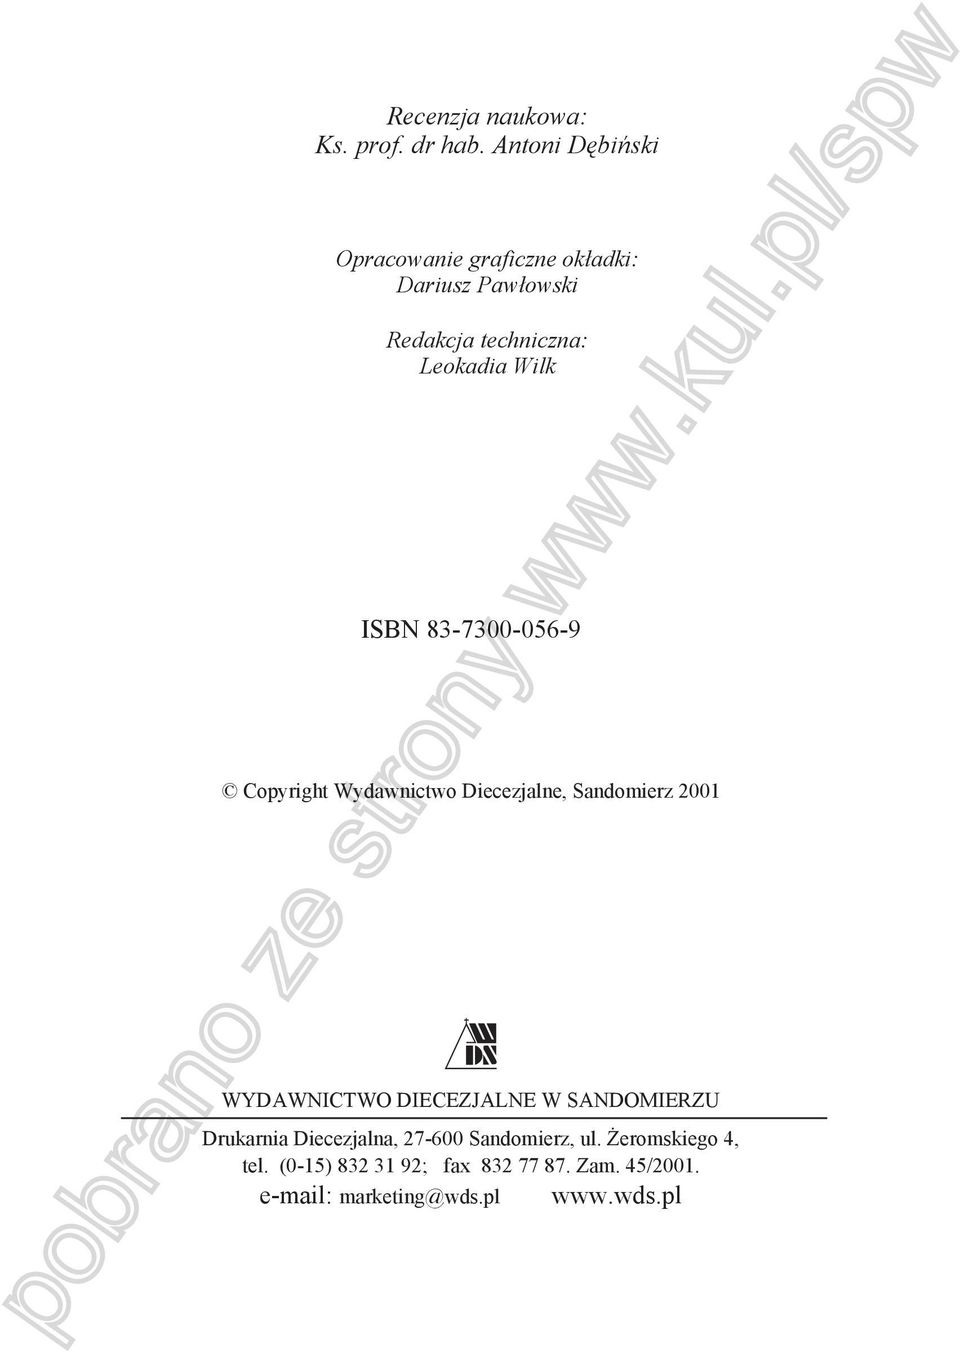 Wilk ISBN 83-7300-056-9 Copyright Wydawnictwo Diecezjalne, Sandomierz 2001 WYDAWNICTWO